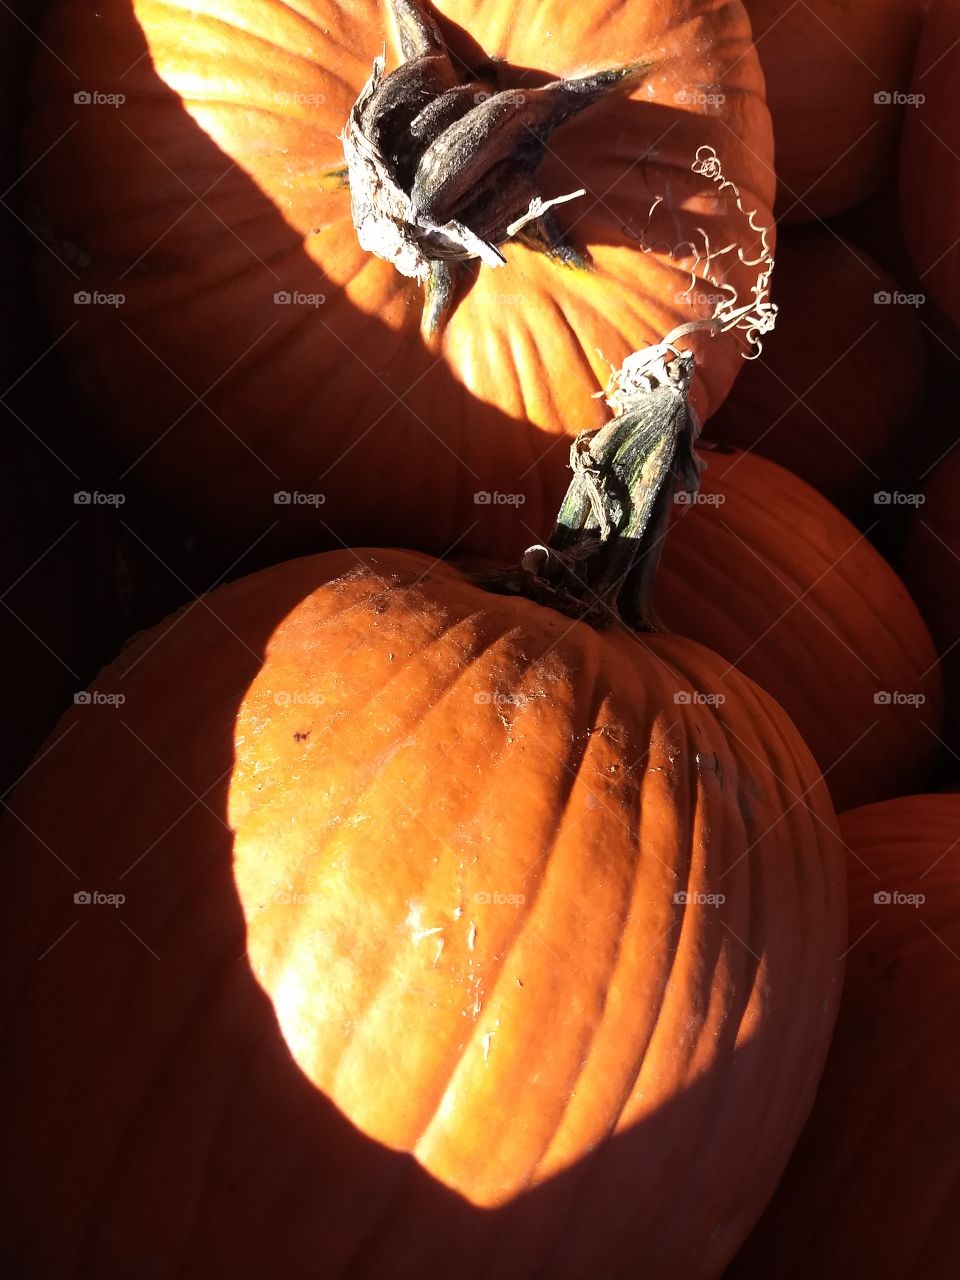 Fall pumpkin Halloween